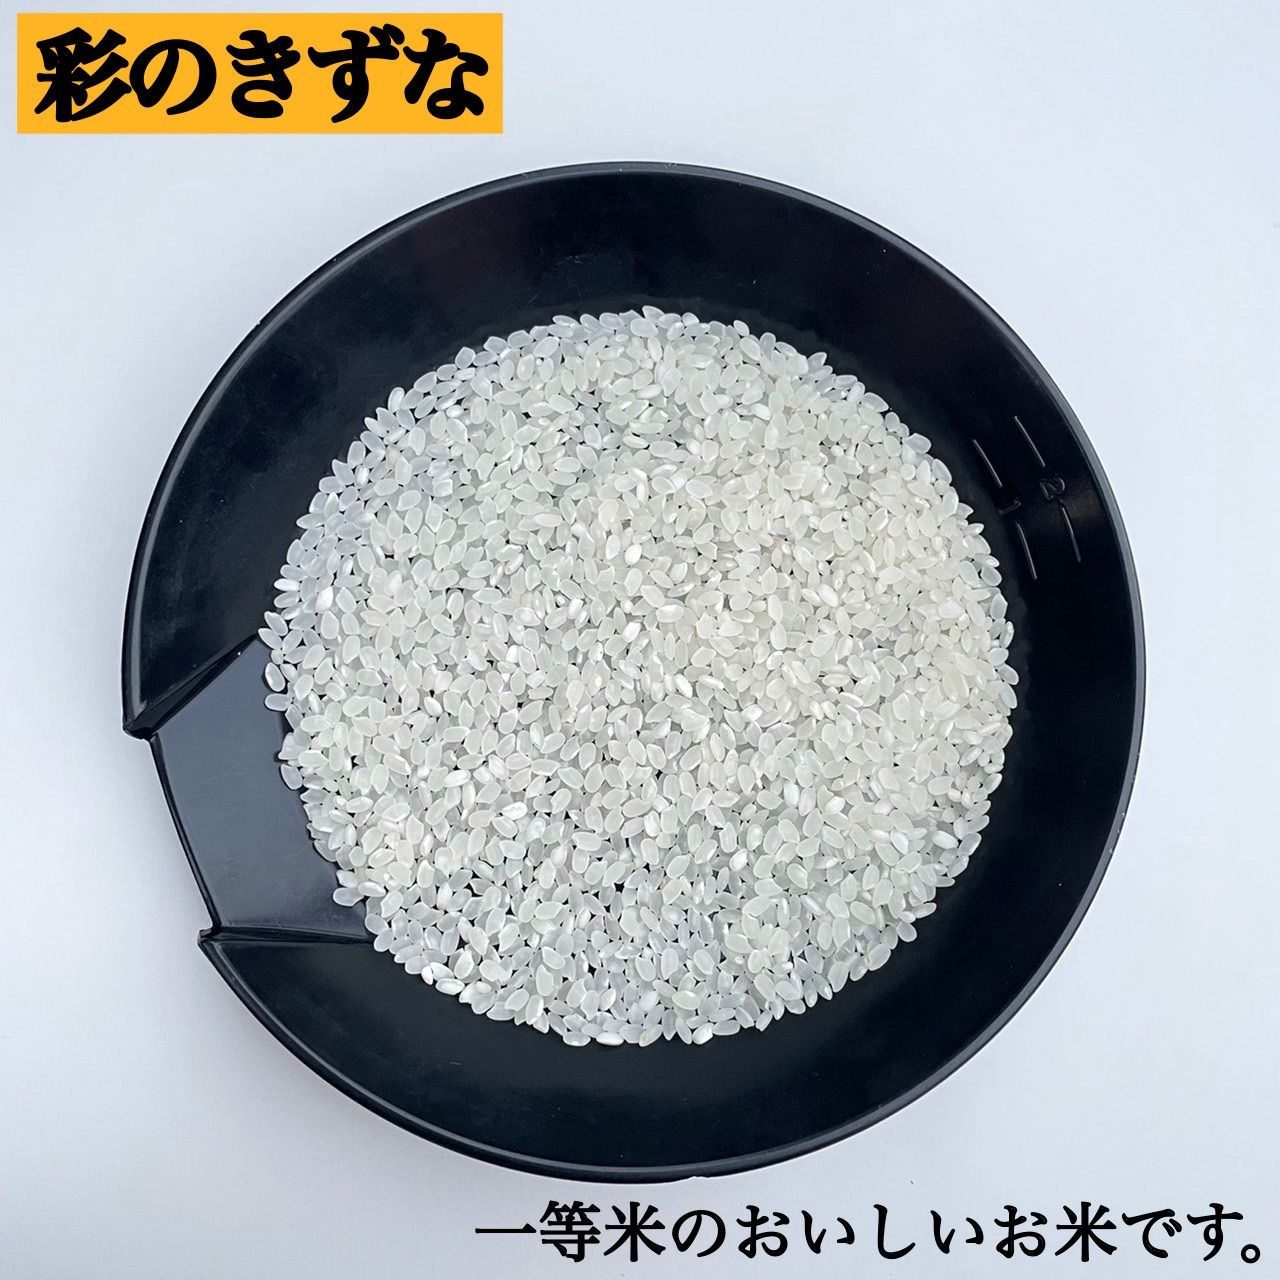 一番の 格安出品 埼玉県産 家計お助け コスパ米 複数原料米 白米10kg 精米料込み